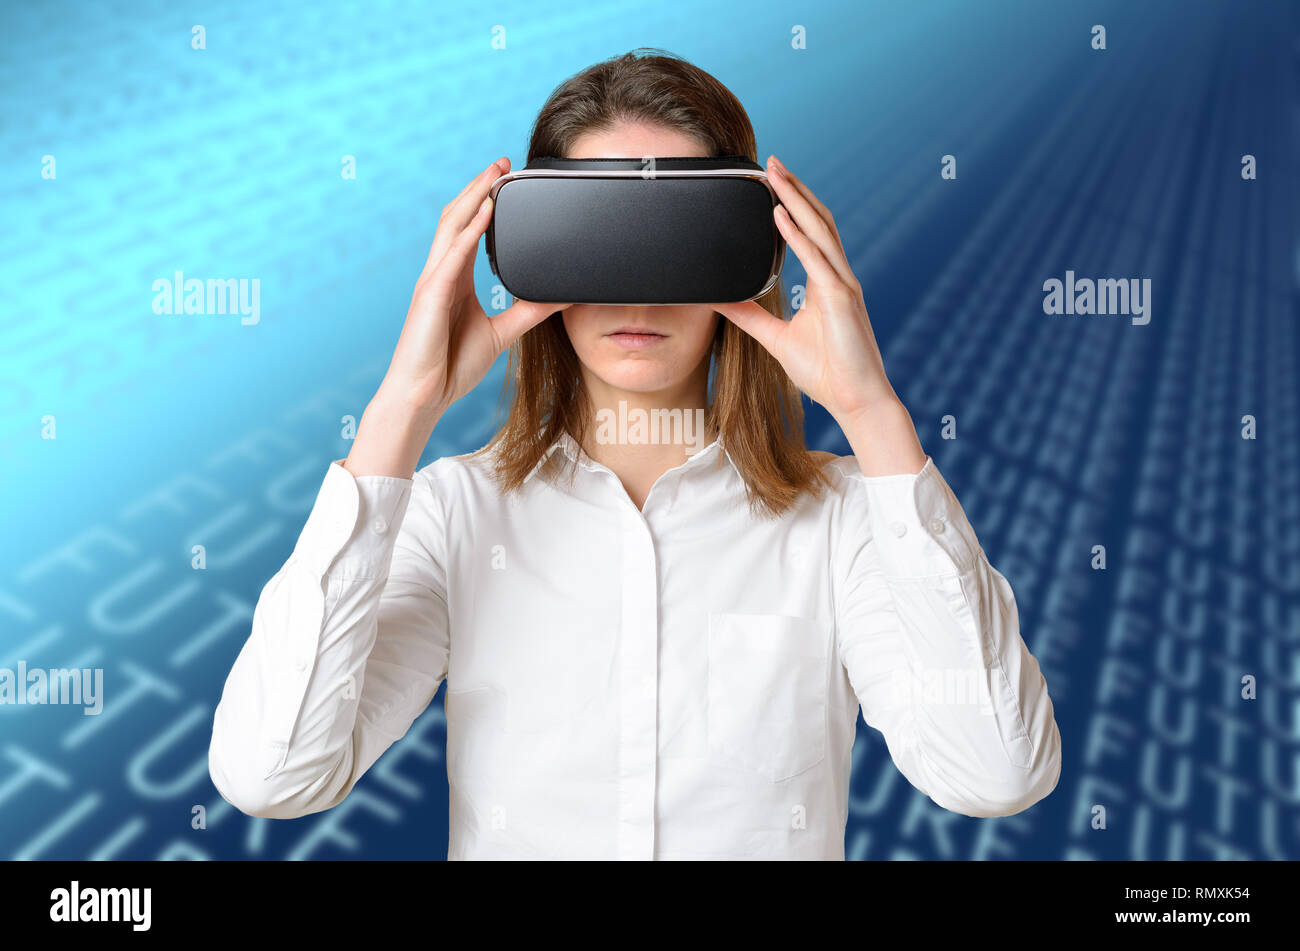 Jeune femme en chemise blanche réglage de lunettes 3D sur sa tête, la tenue de l'appareil noir avec les deux mains, faire l'expérience de la réalité virtuelle. Avant por mi-longueur Banque D'Images